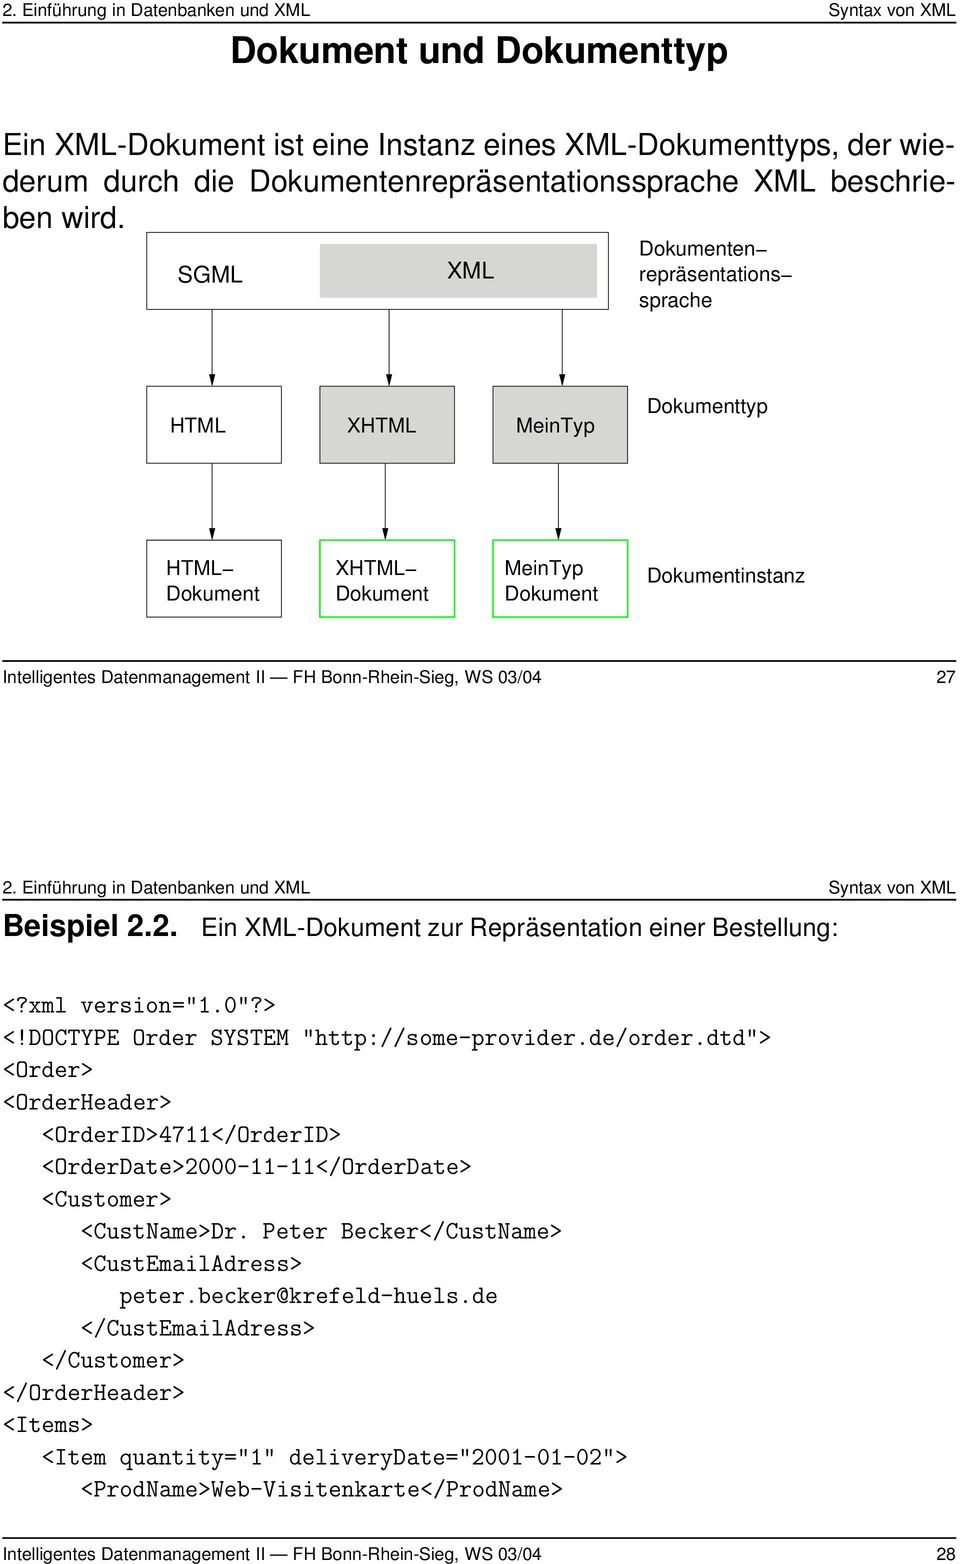 27 Beispiel 2.2. Ein XML-Dokument zur Repräsentation einer Bestellung: <?xml version="1.0"?> <!DOCTYPE Order SYSTEM "http://some-provider.de/order.